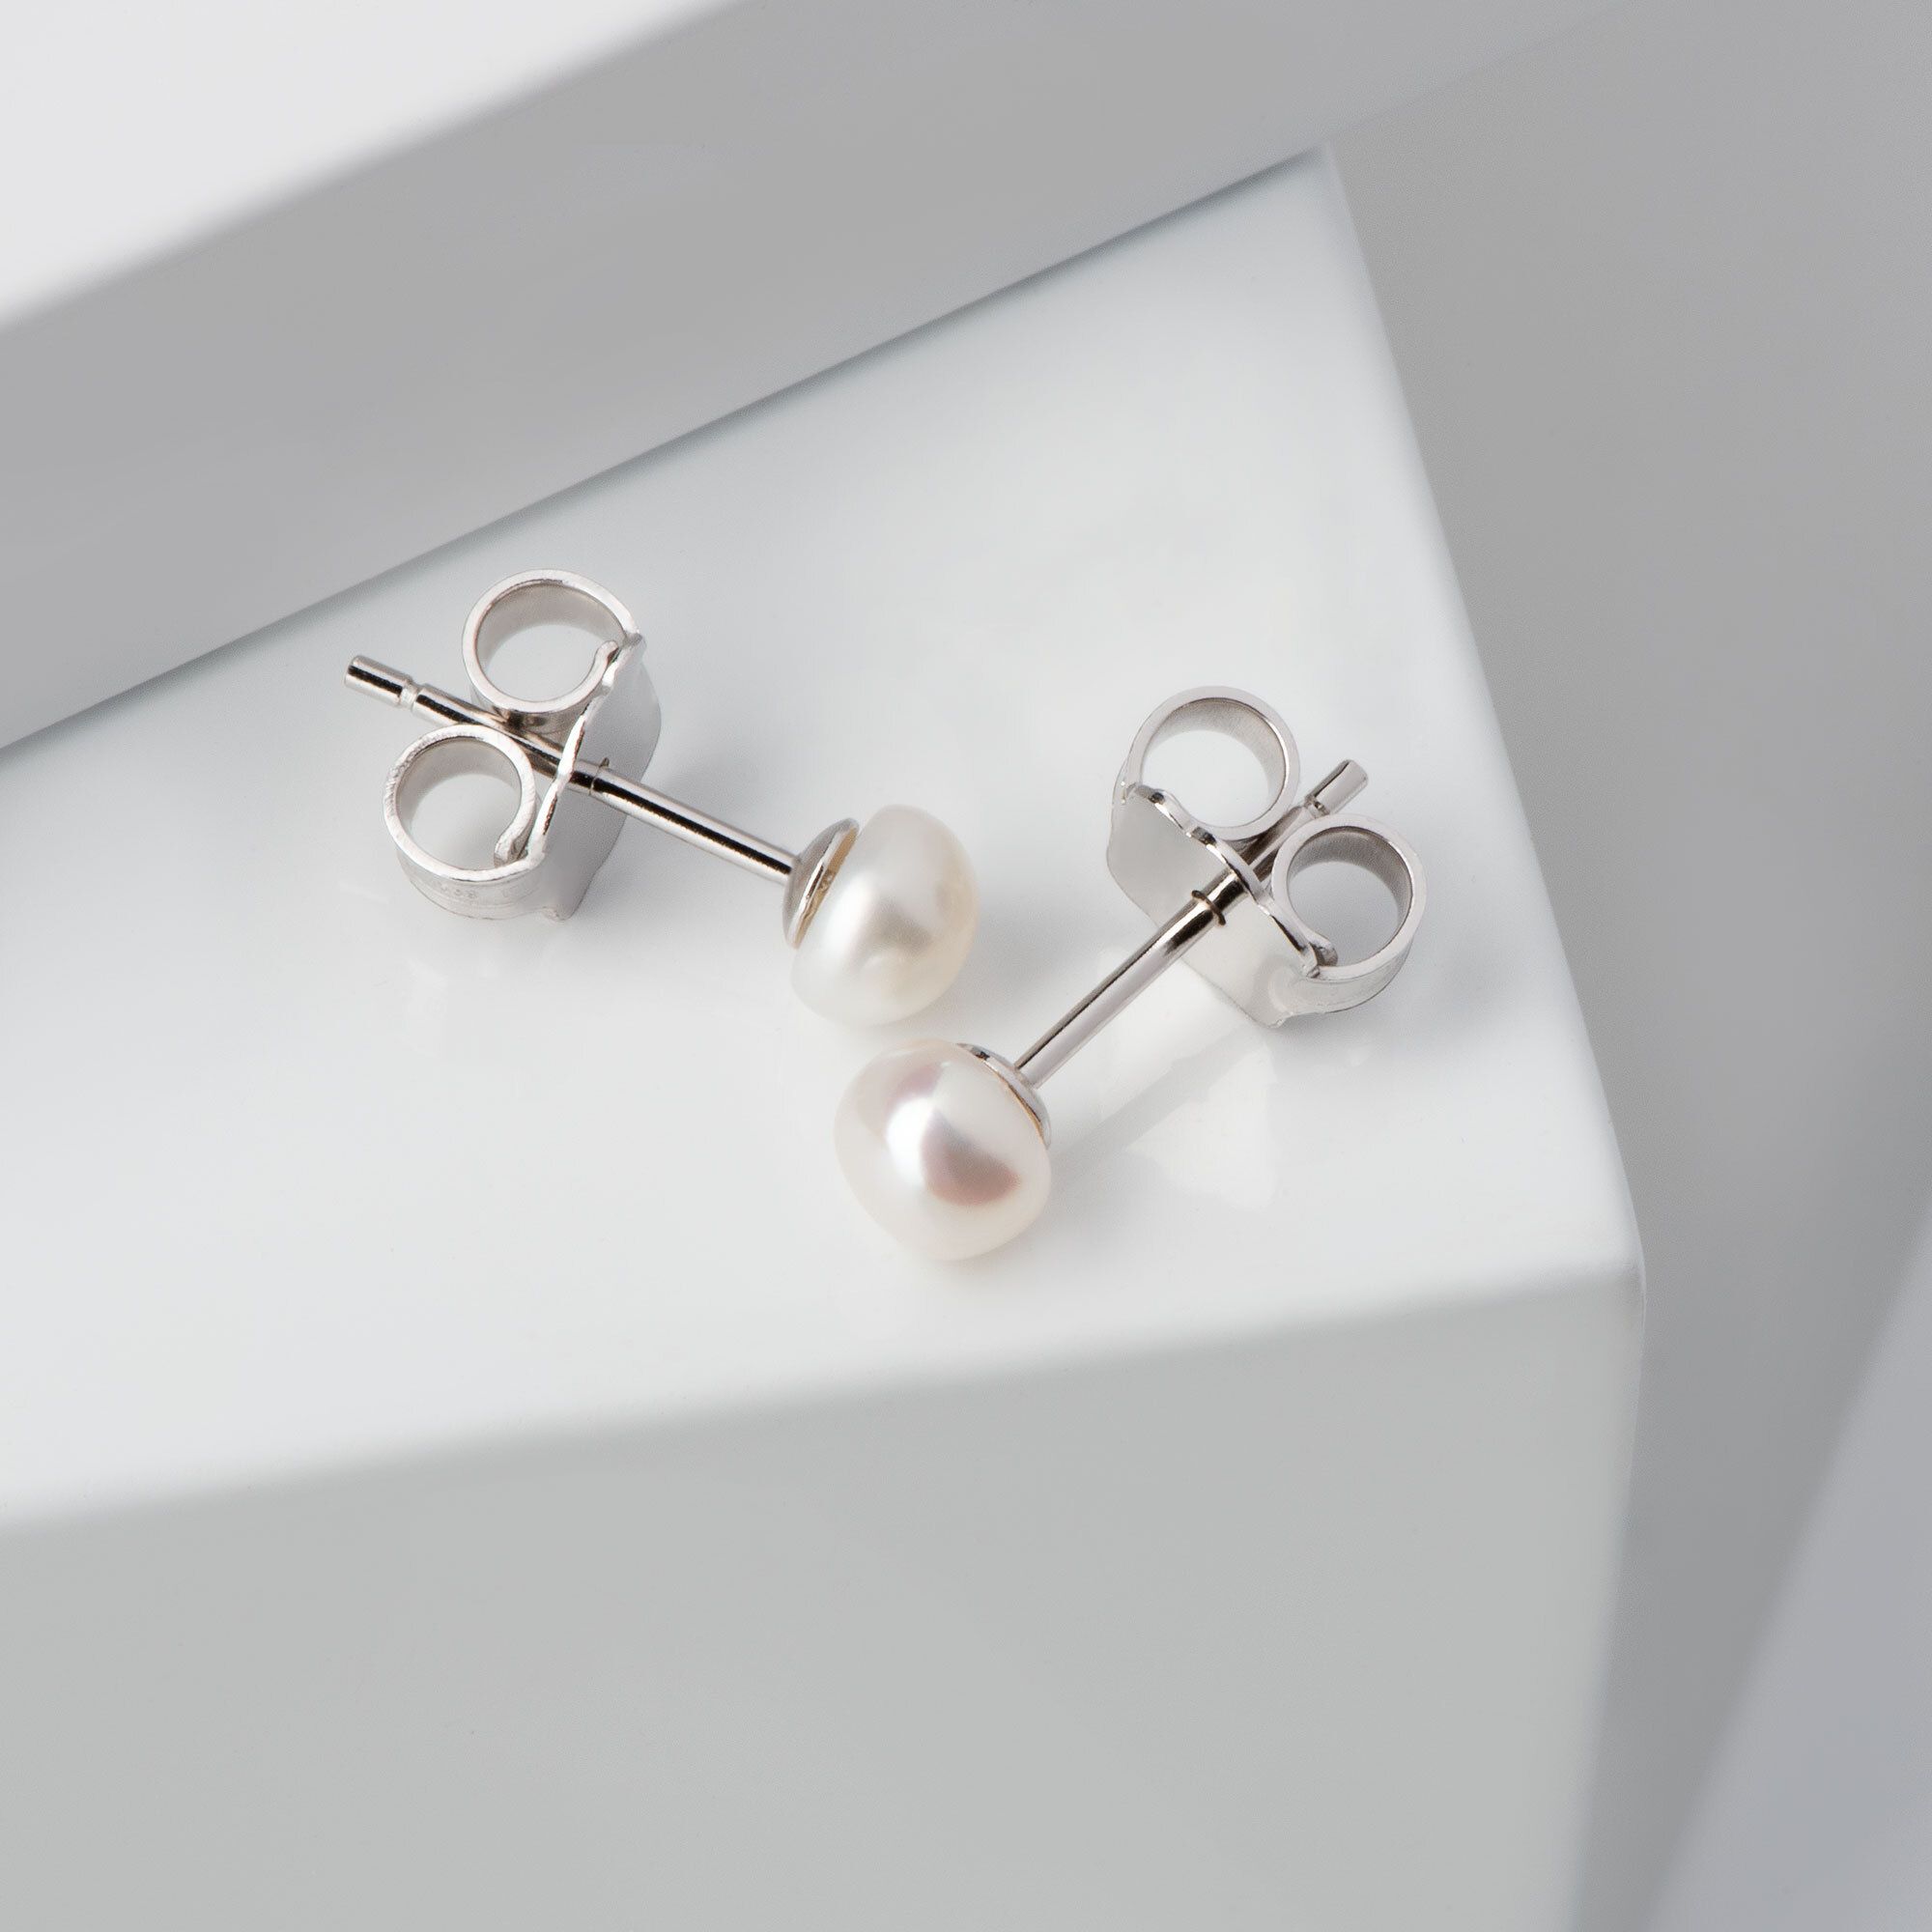 2 orecchini in argento 925 con perle coltivate